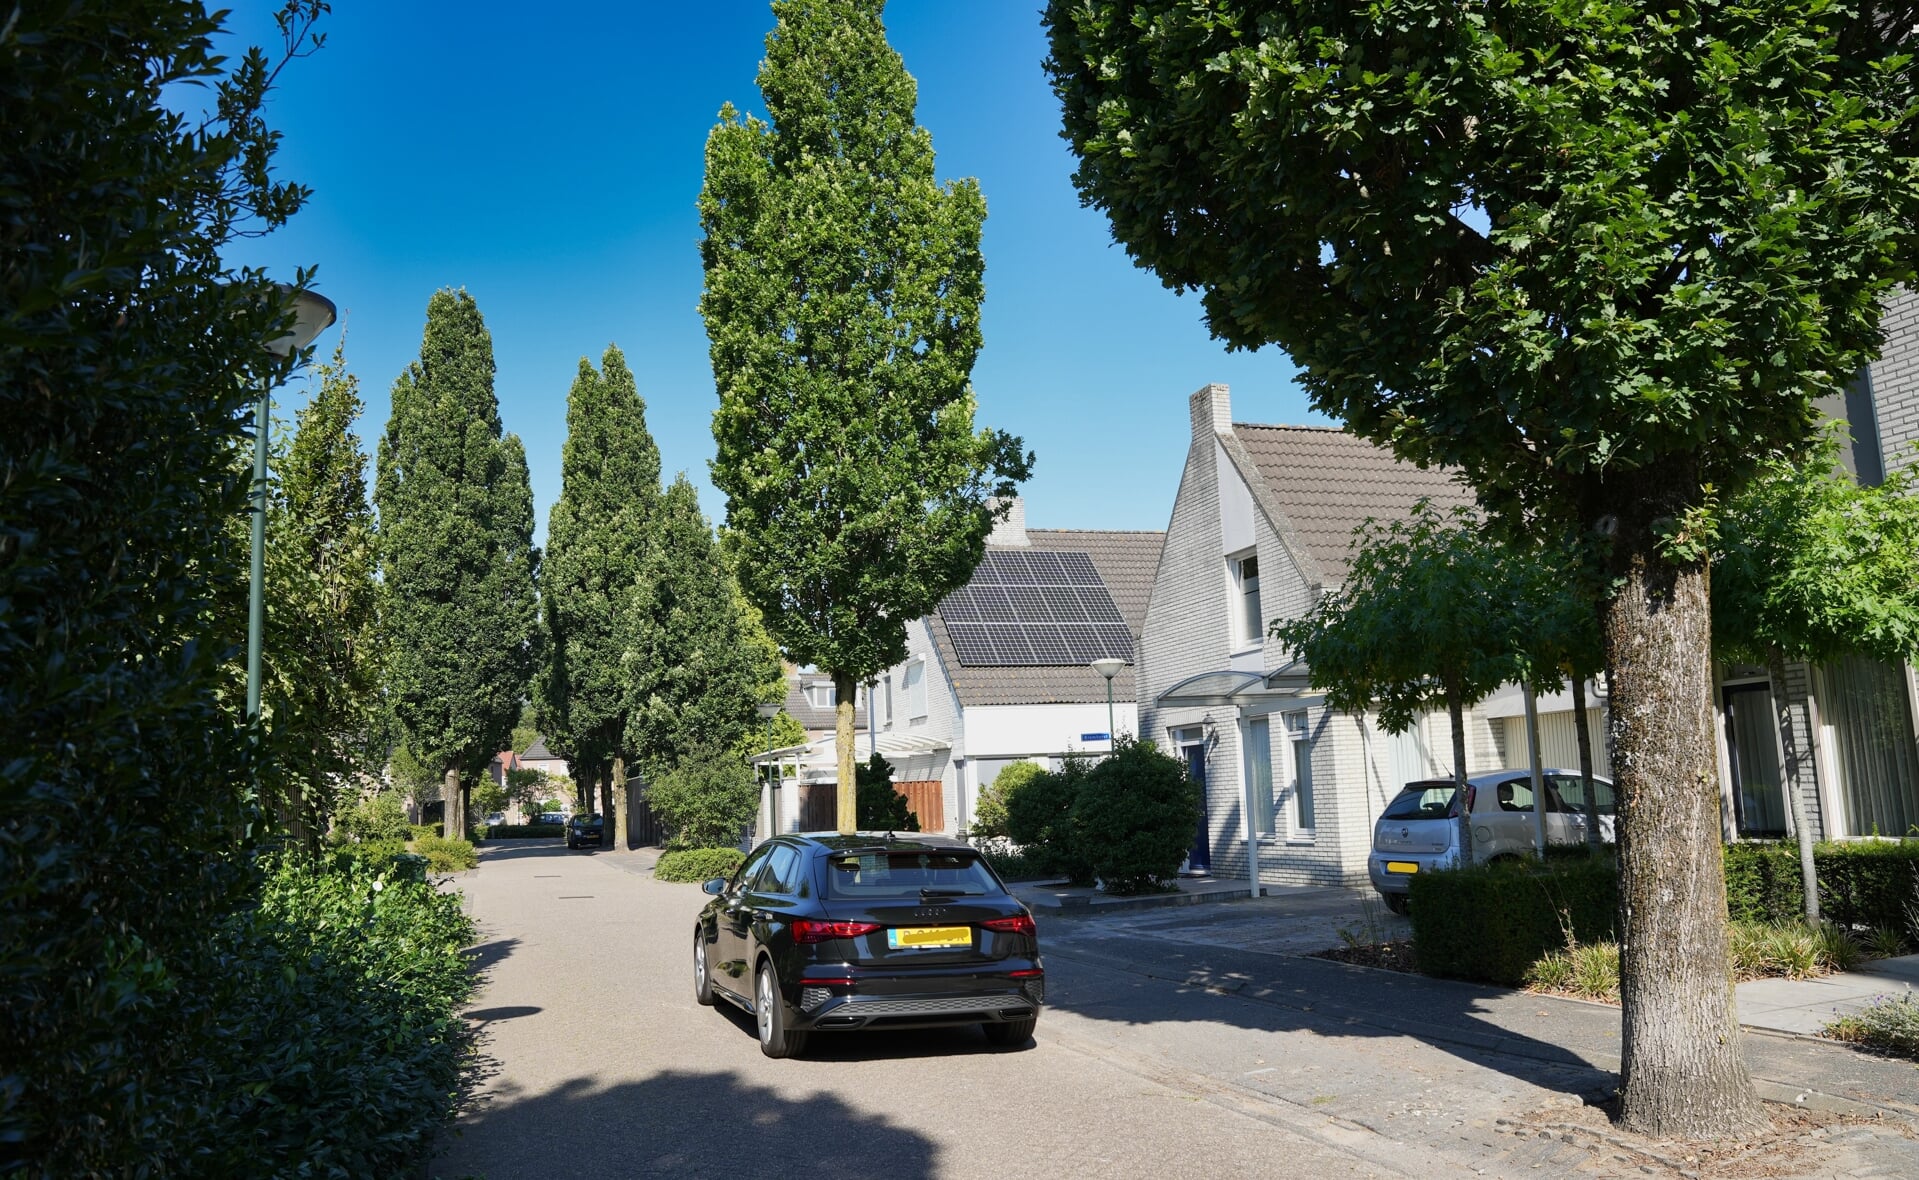 Wortelopdruk en dood hout zijn de hoofdredenen voor de gemeente Boxtel om 57 bomen te koppen in drie Liempdse straten.